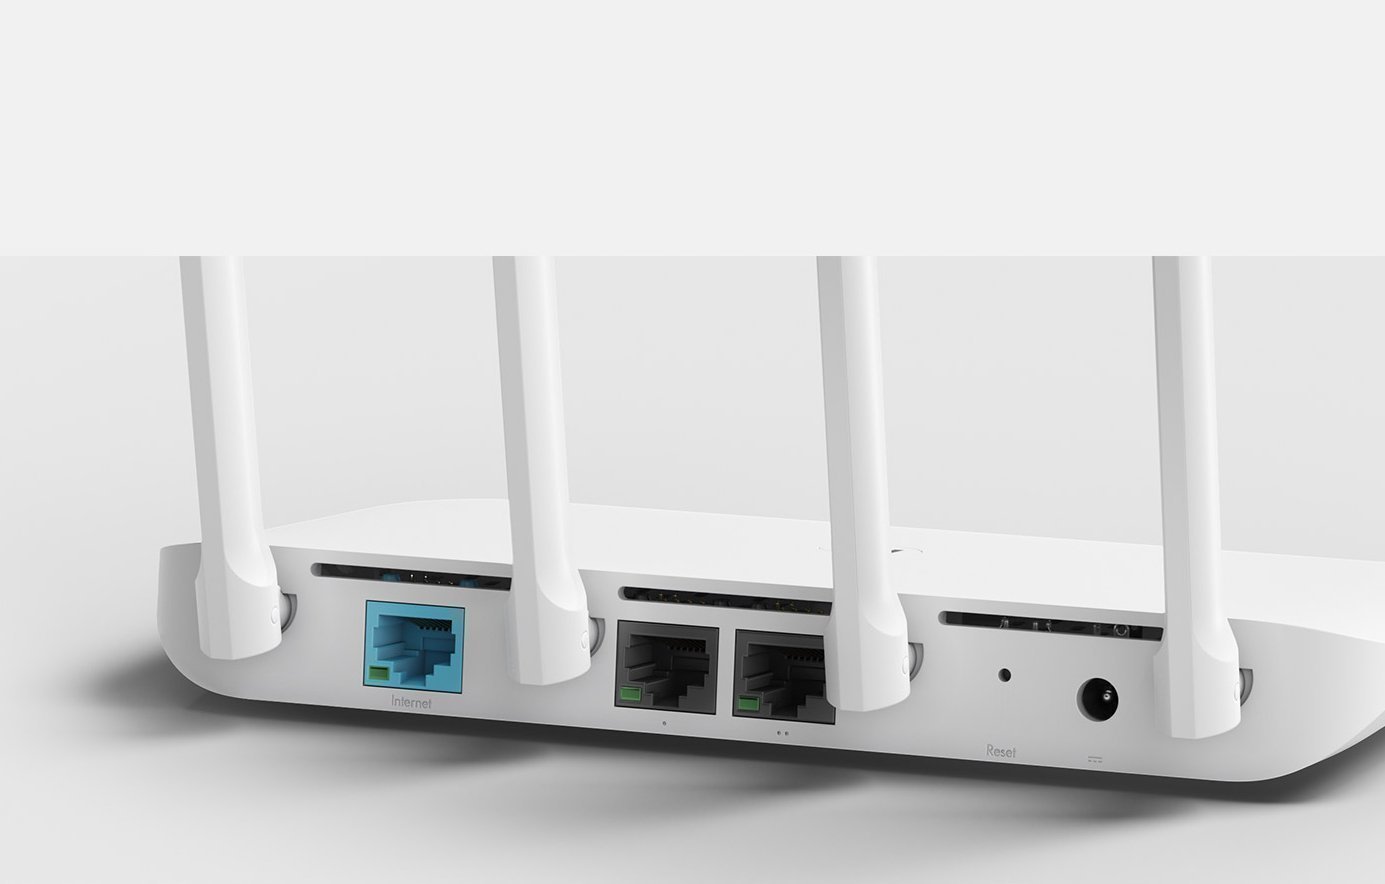 Оснащен современными портами Full Gigabit Ethernet